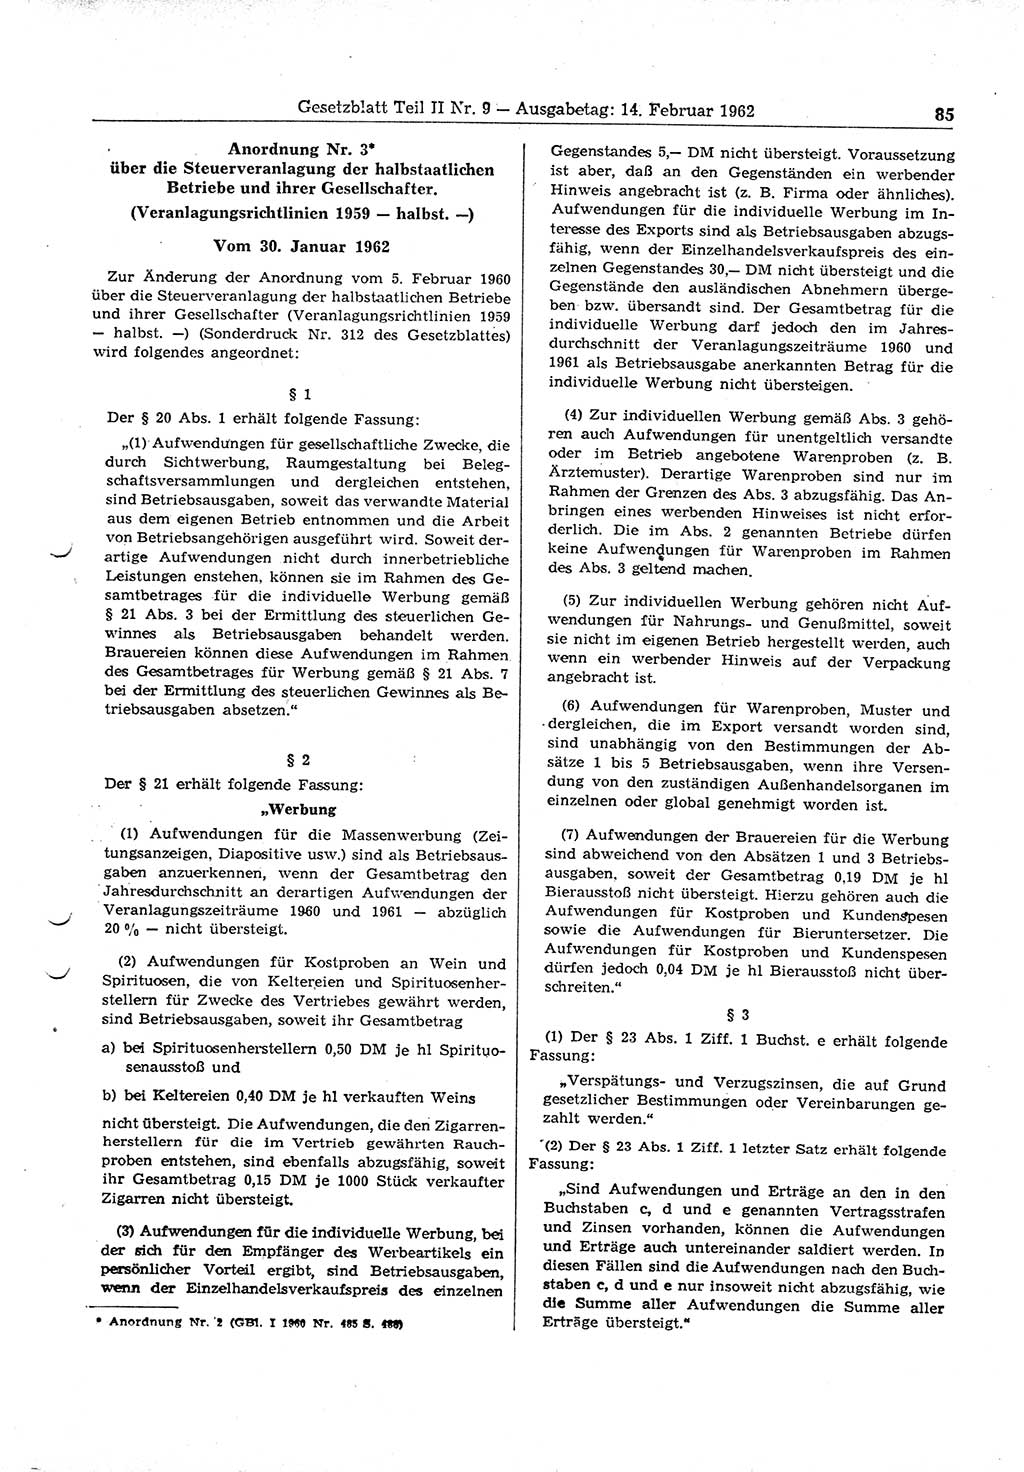 Gesetzblatt (GBl.) der Deutschen Demokratischen Republik (DDR) Teil ⅠⅠ 1962, Seite 85 (GBl. DDR ⅠⅠ 1962, S. 85)